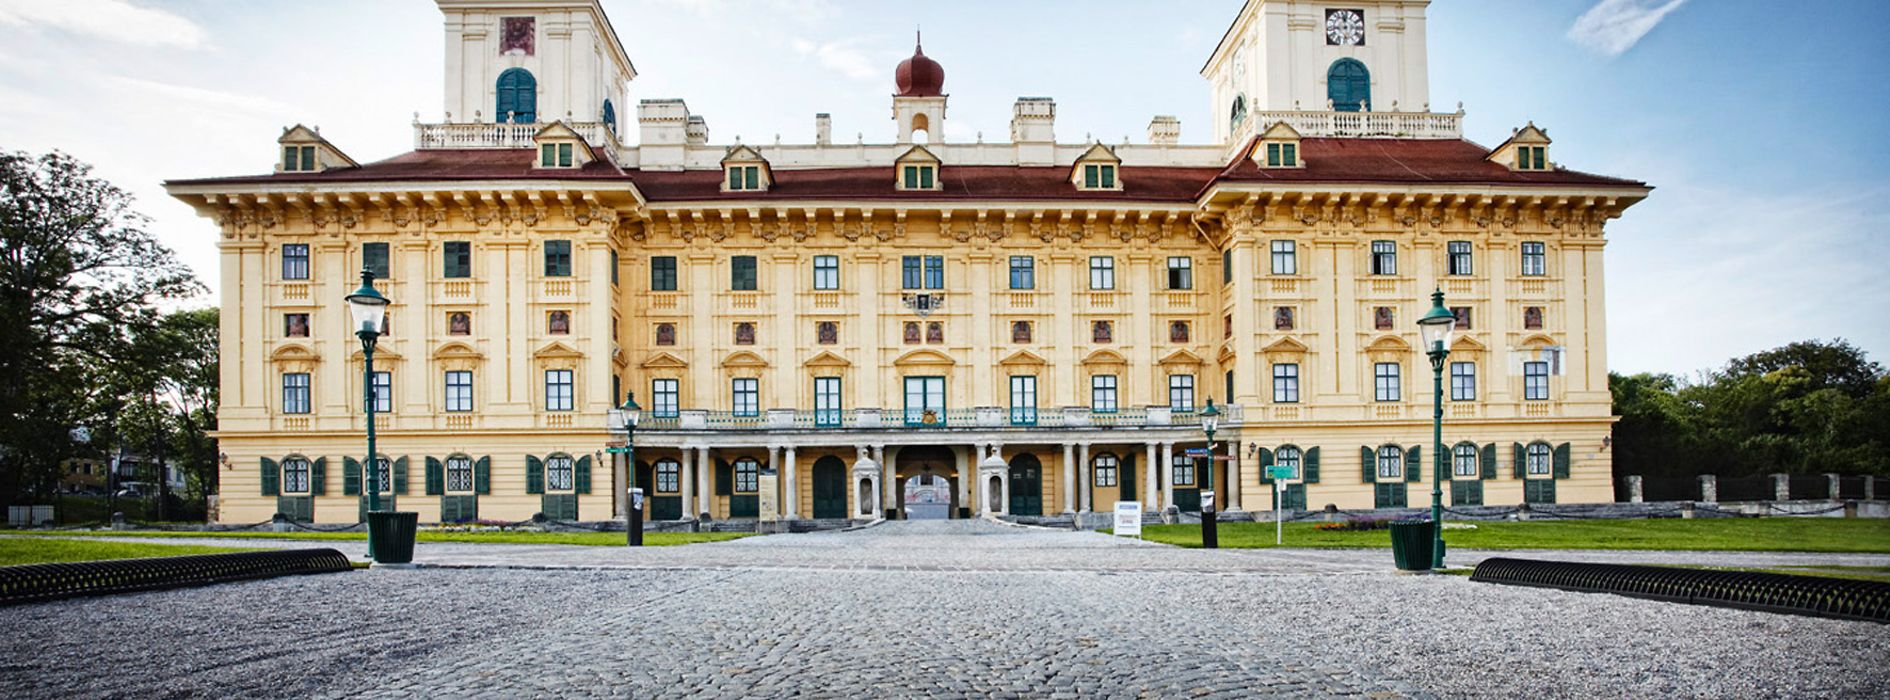 Esterházy Palace